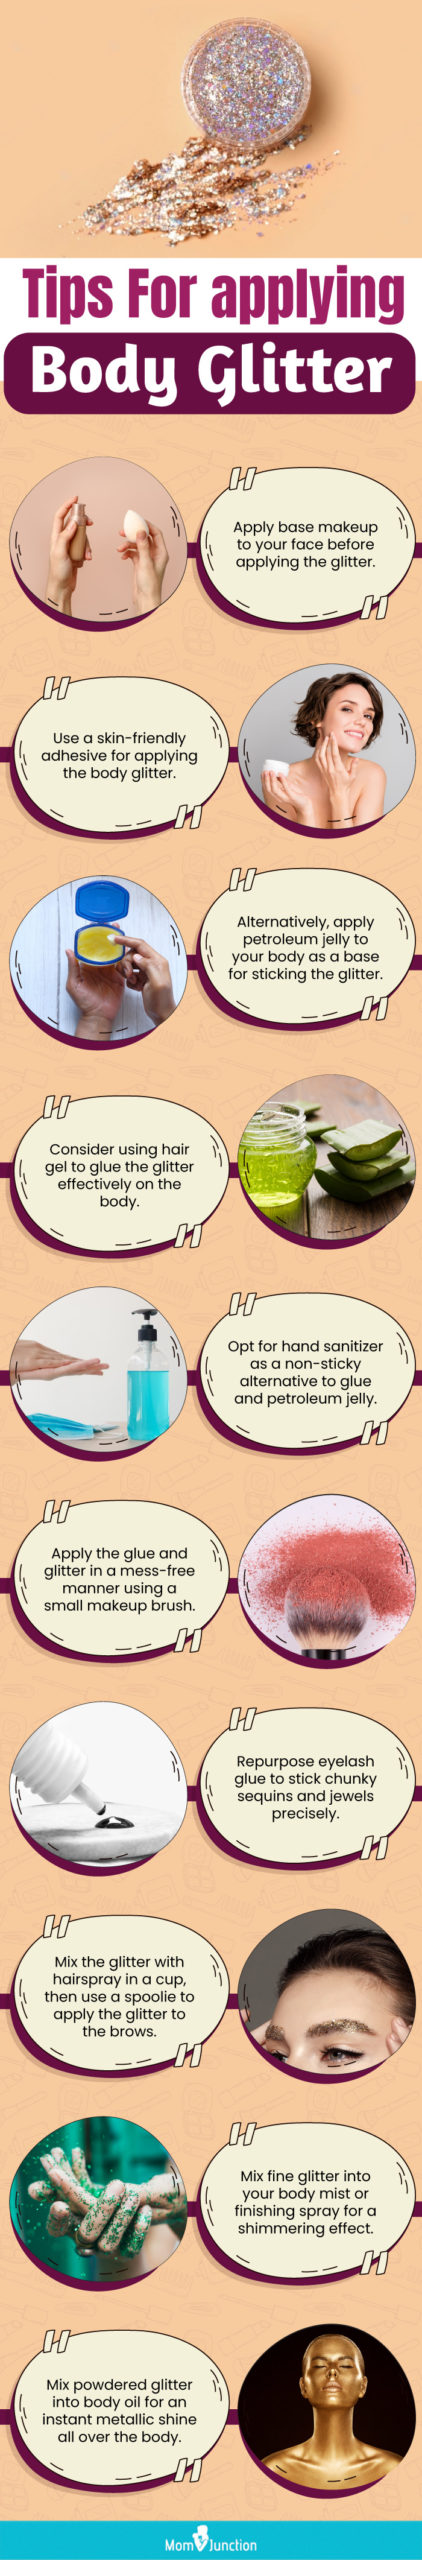 Tips For Applying Body Glitter (infographic)